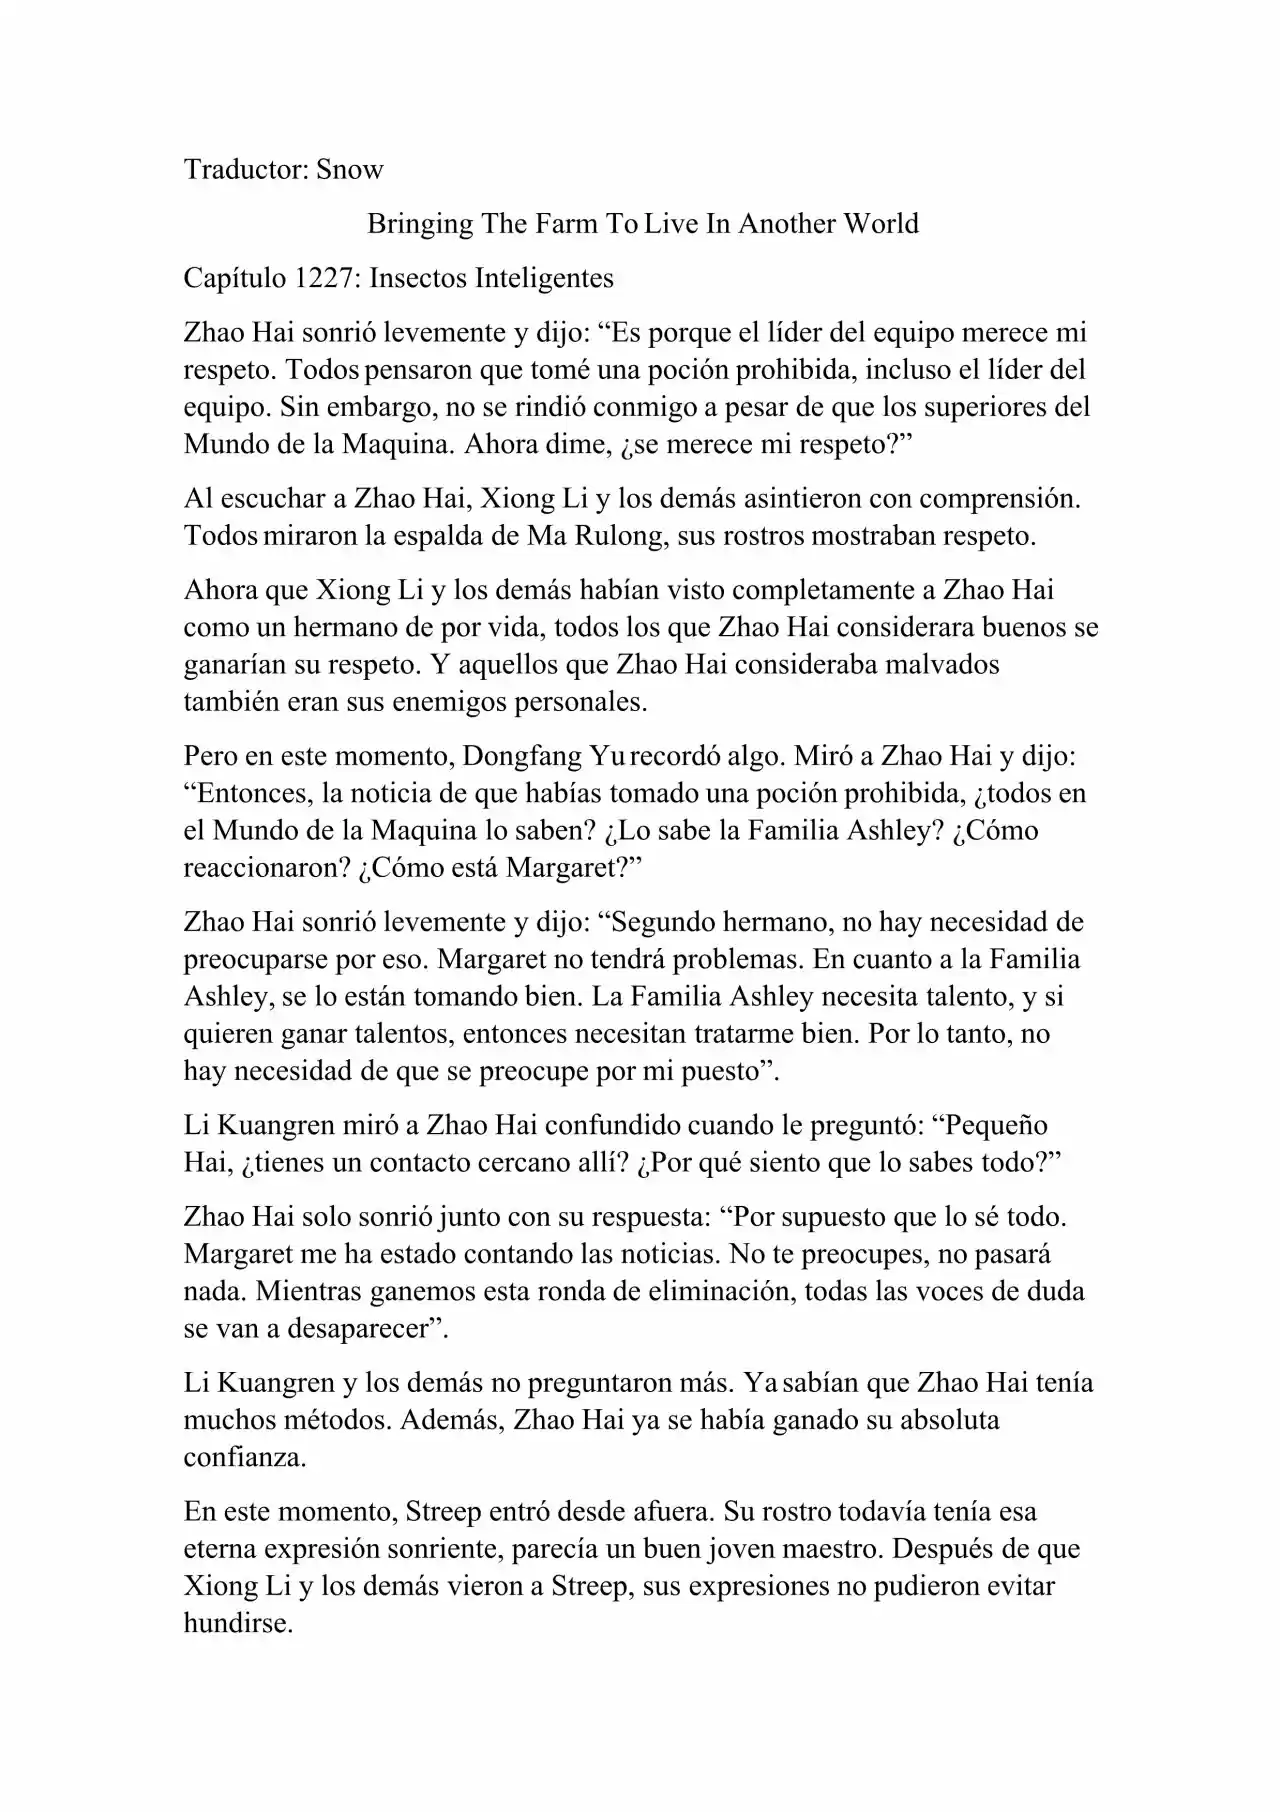 Llevando La Granja Para Vivir En Otro Mundo (Novela: Chapter 1227 - Page 1